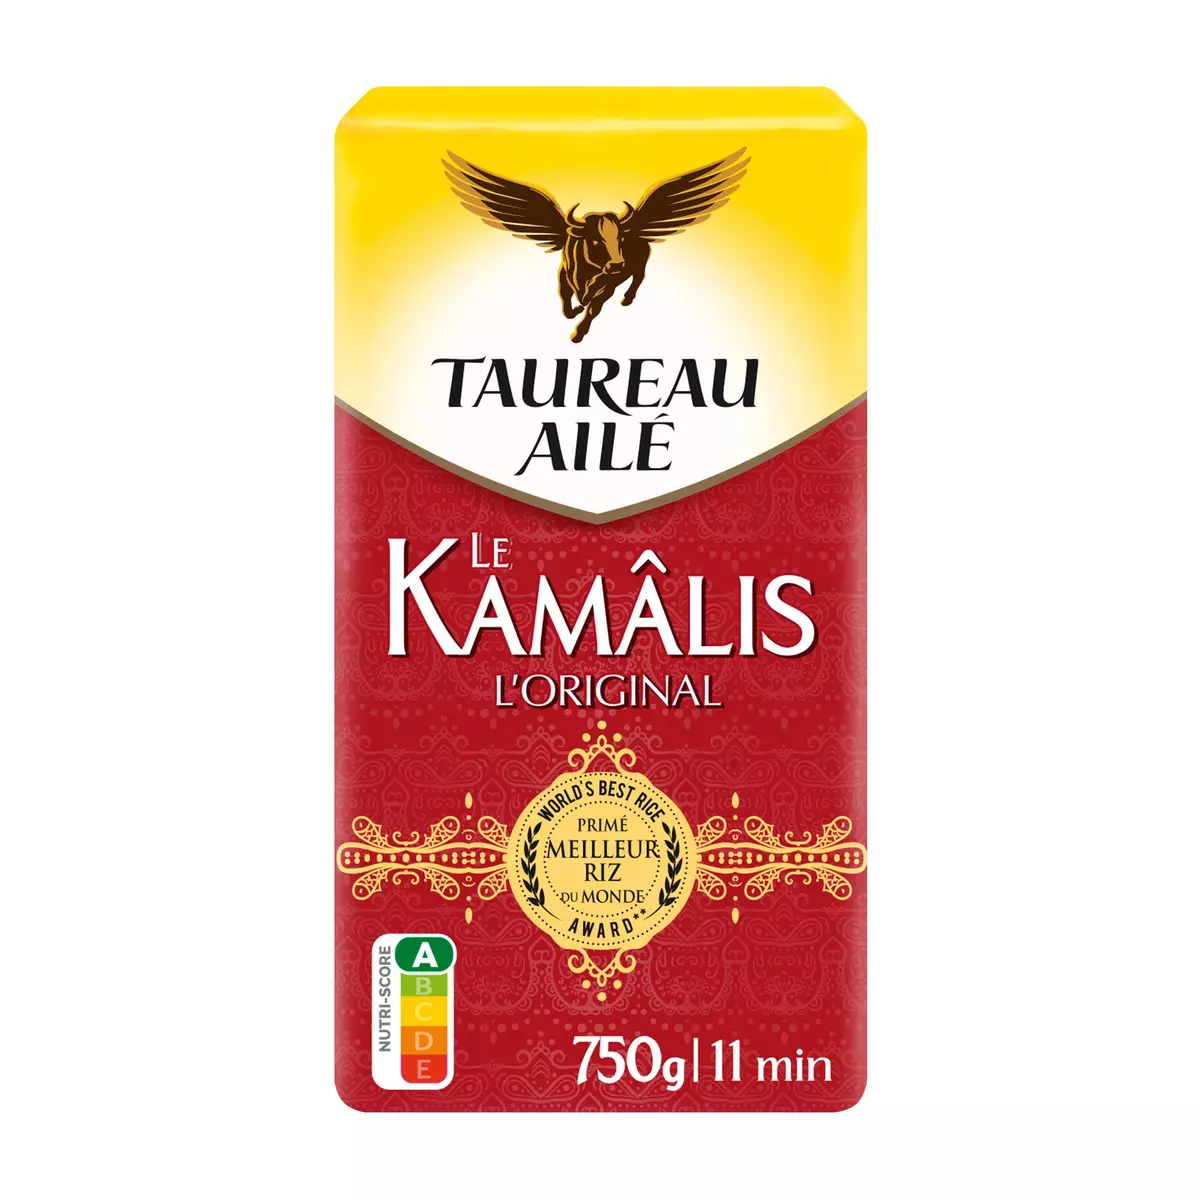 TAUREAU AILE Riz Kamâlis parfumé premium intense et raffiné 750g